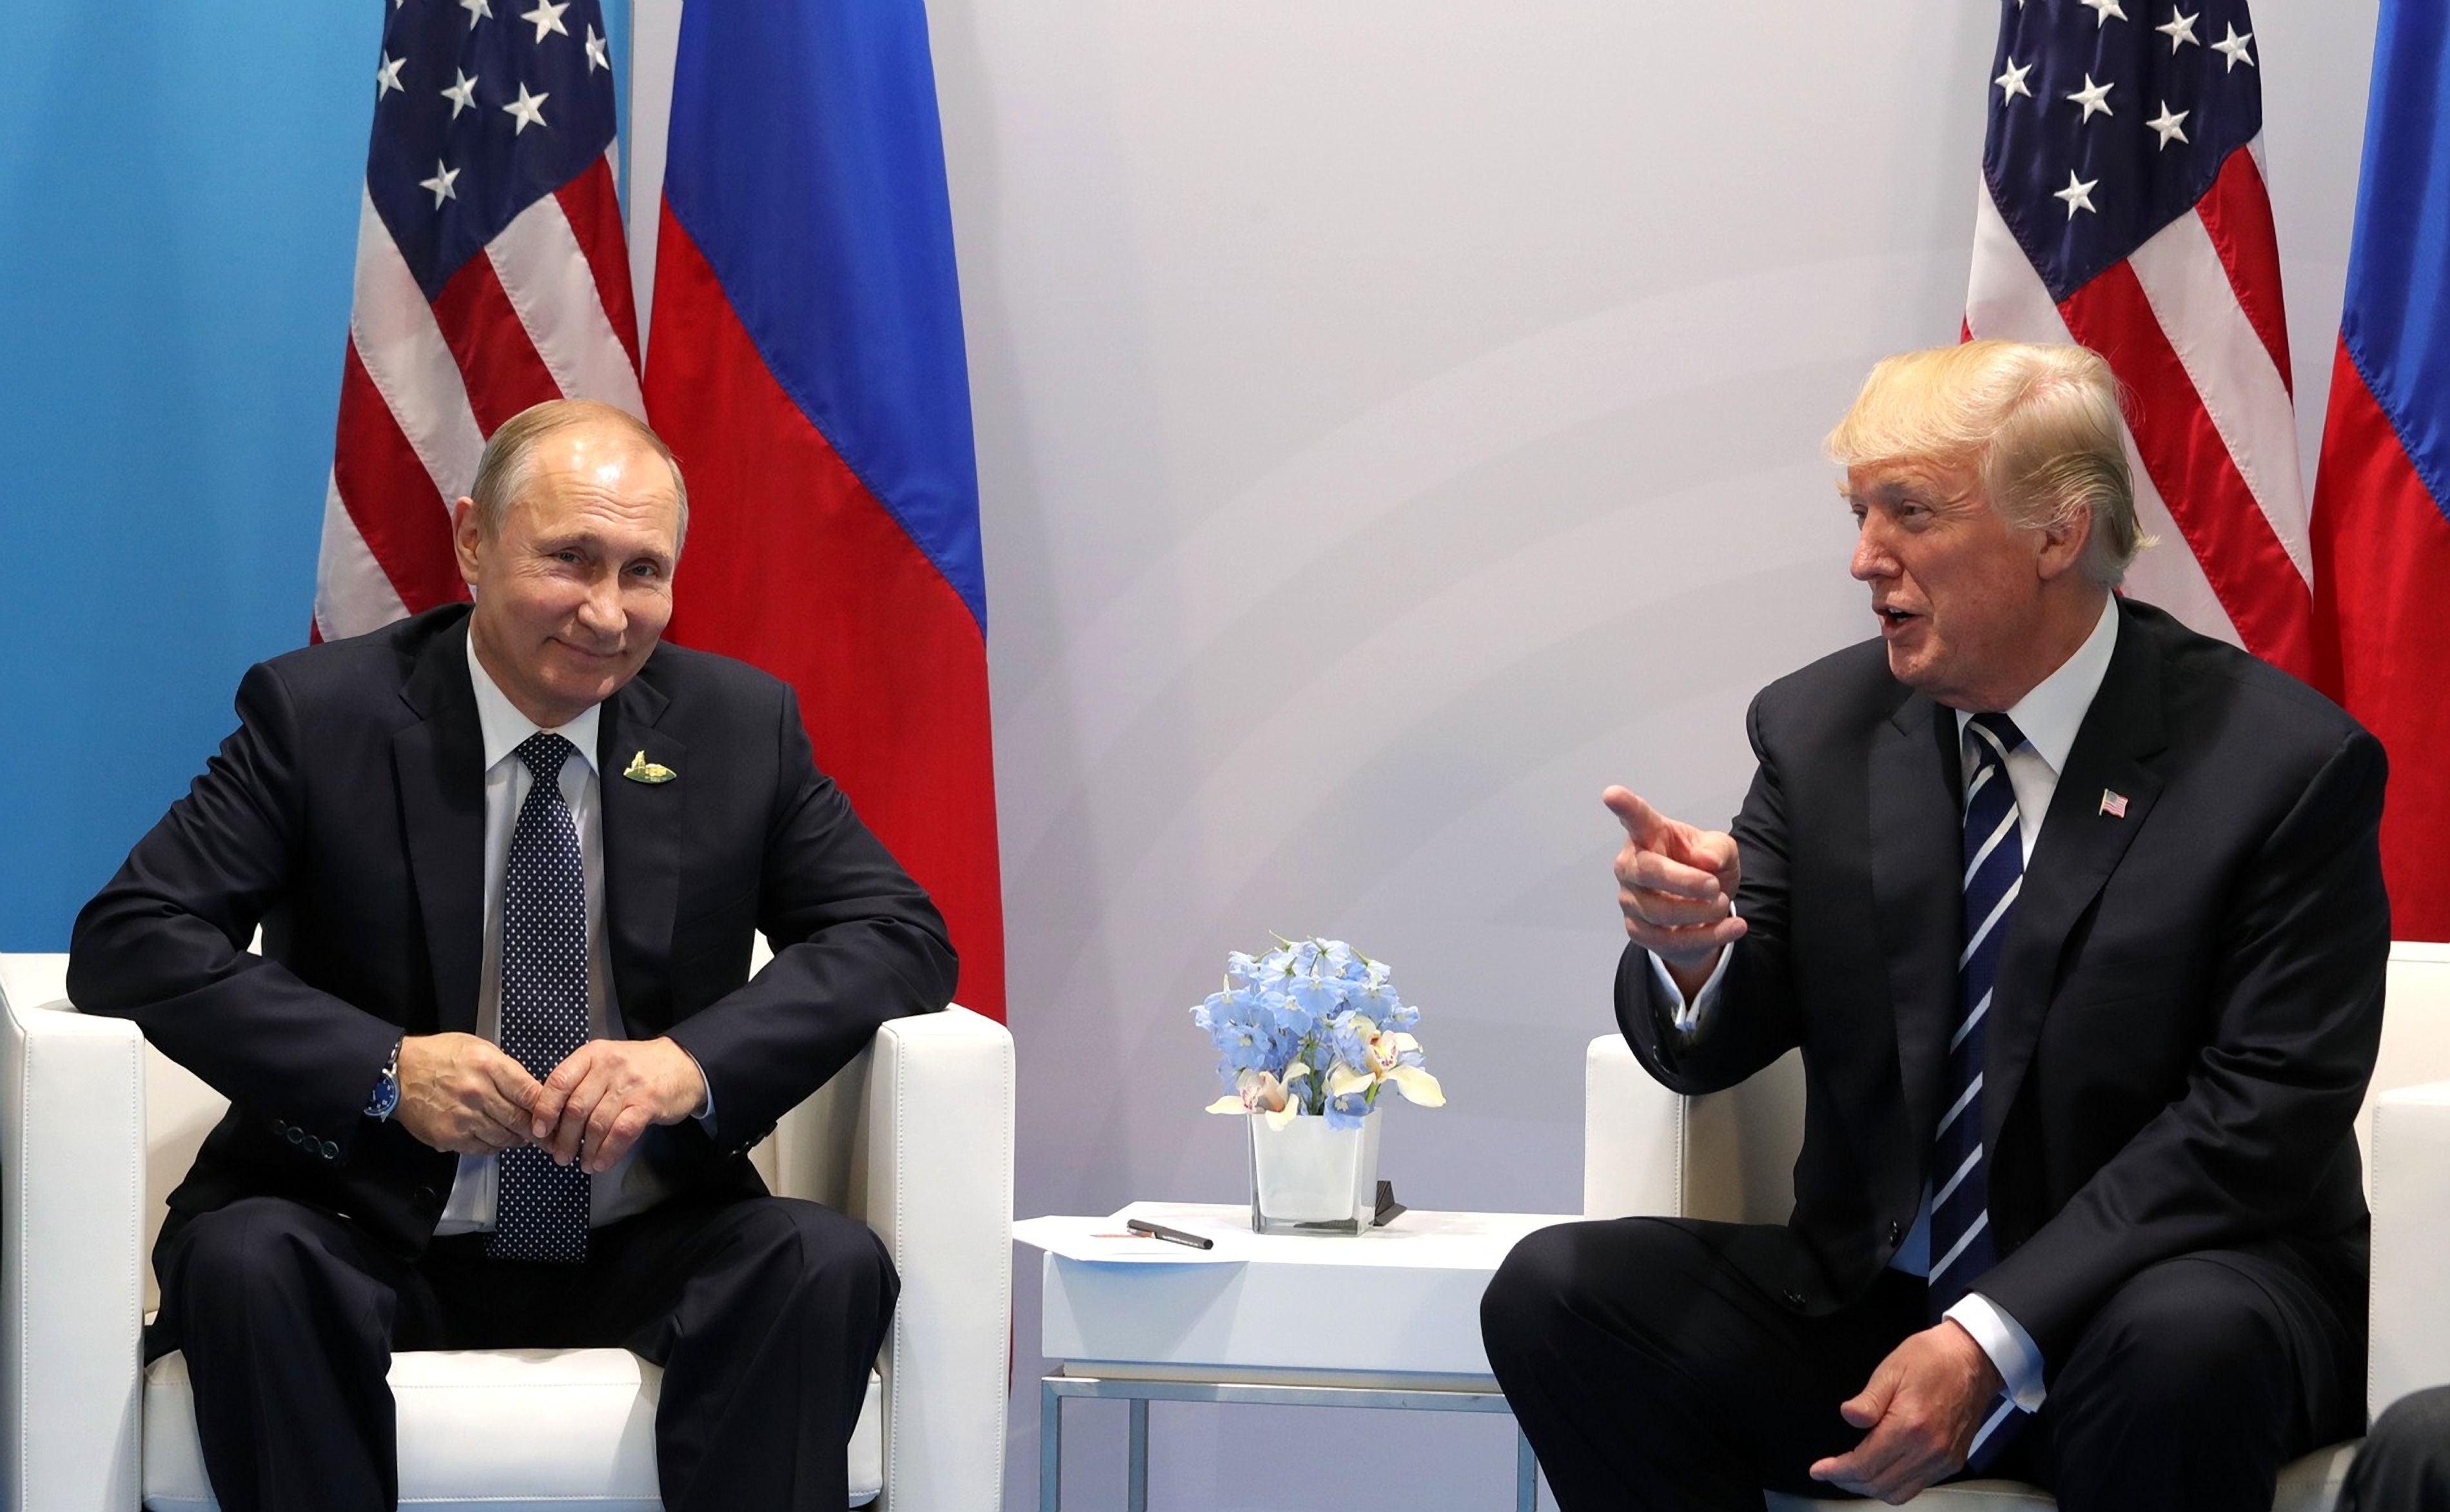 Dailystorm - Уважаемый господин президент. Путин встретился с Трампом